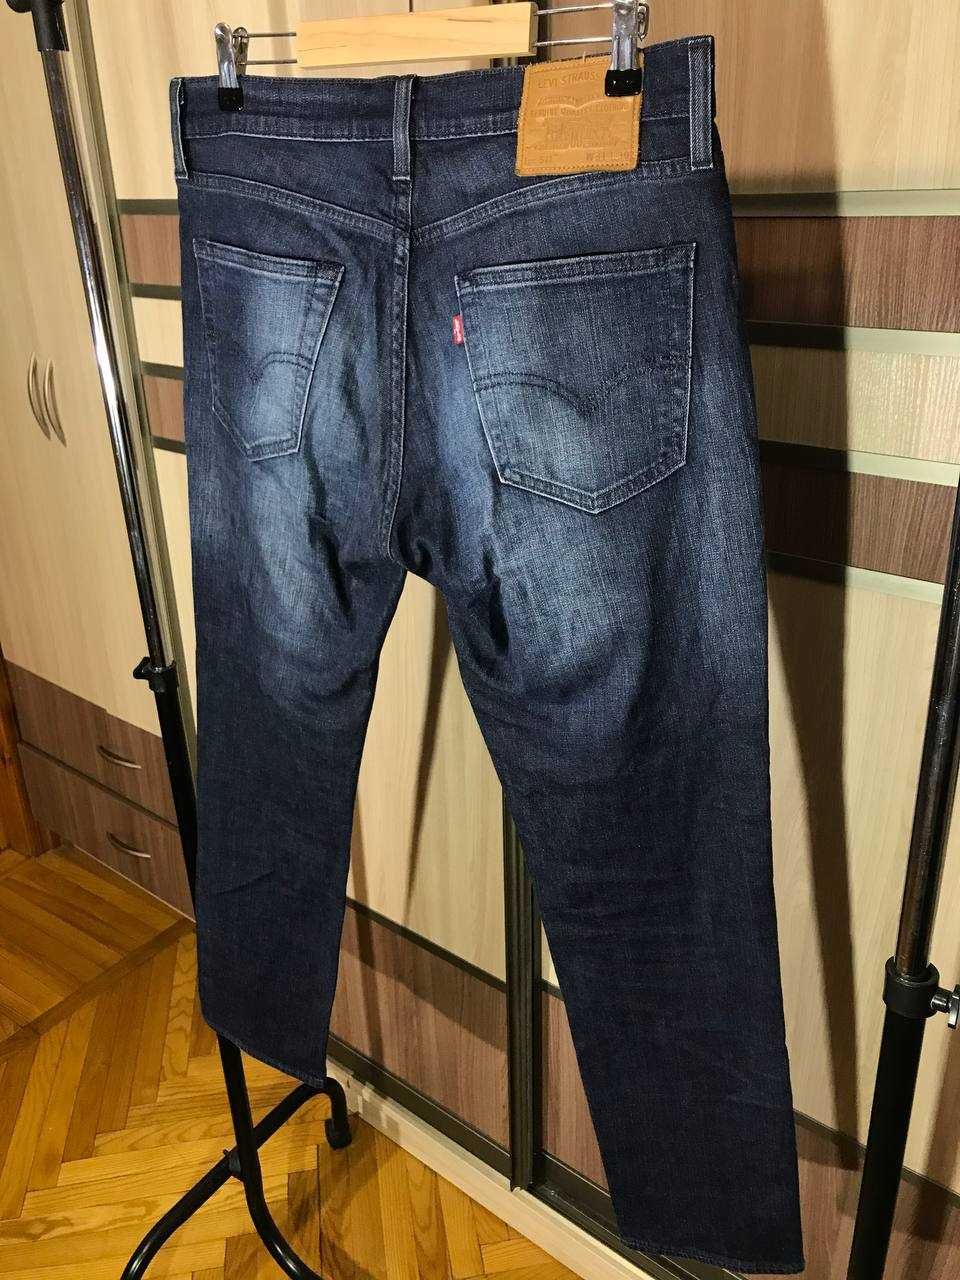 Мужские джинсы брюки Levi's 511 w31 l30 оригинал